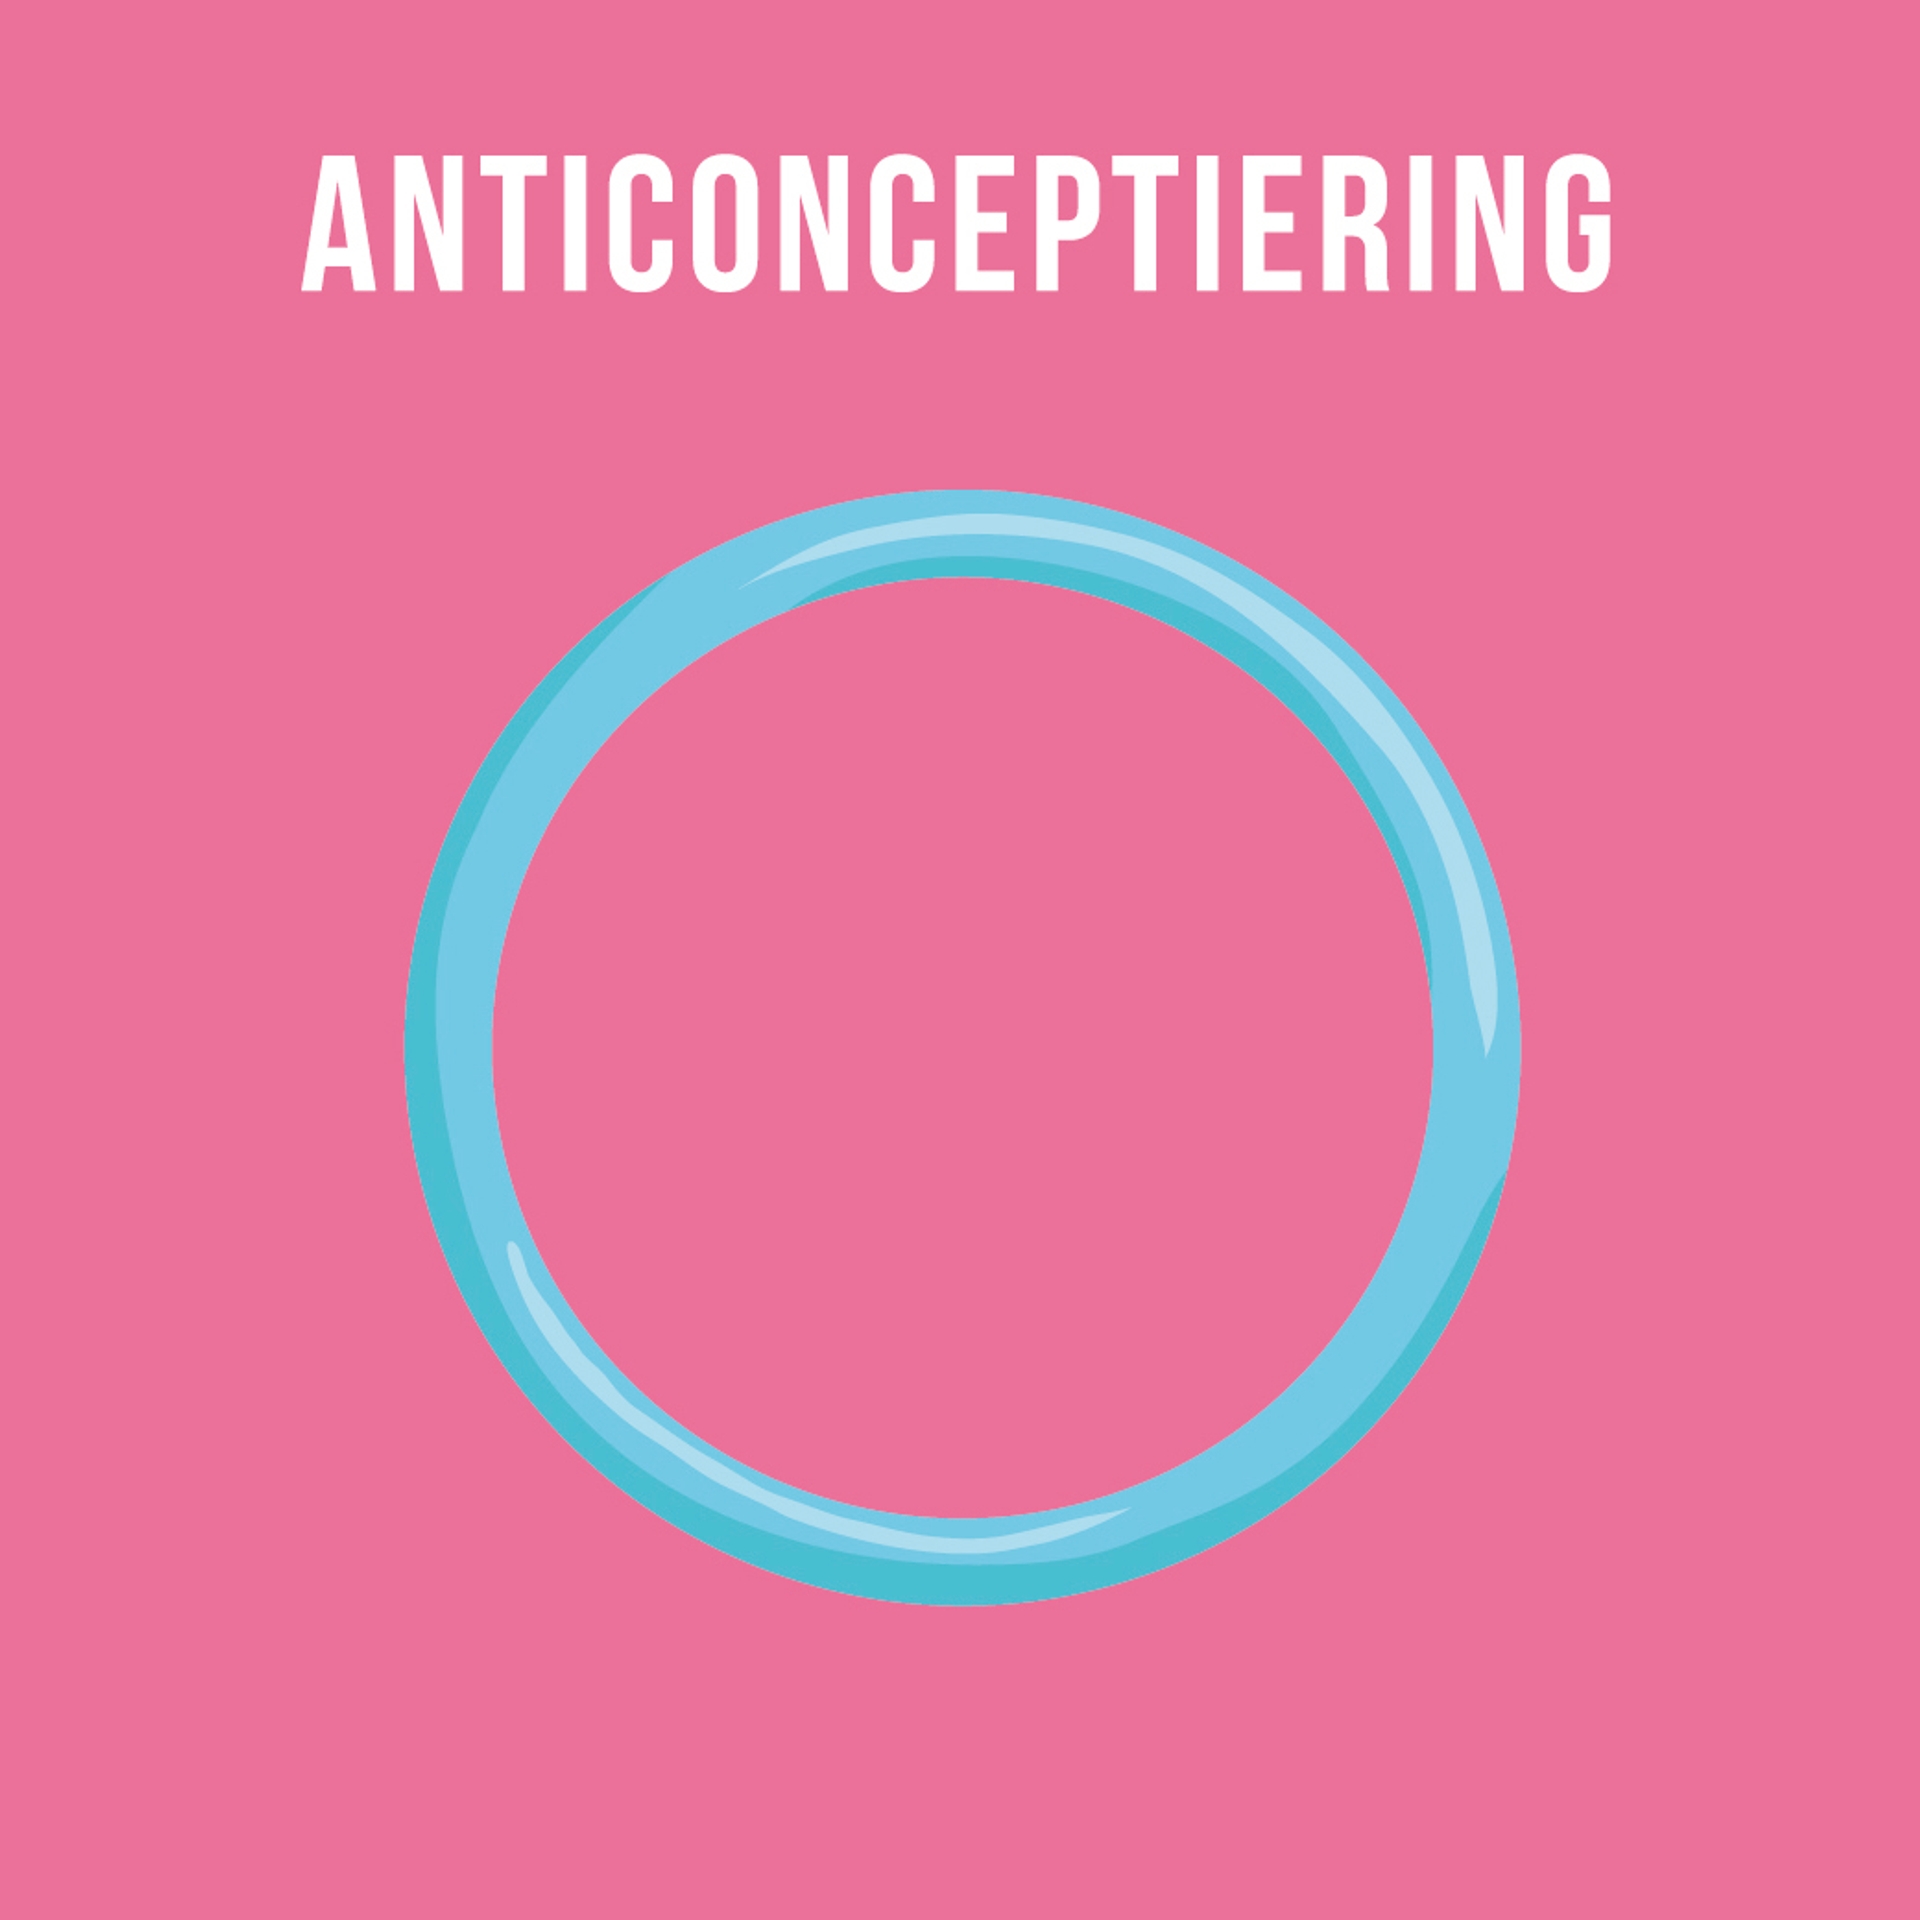 Anticonceptiering